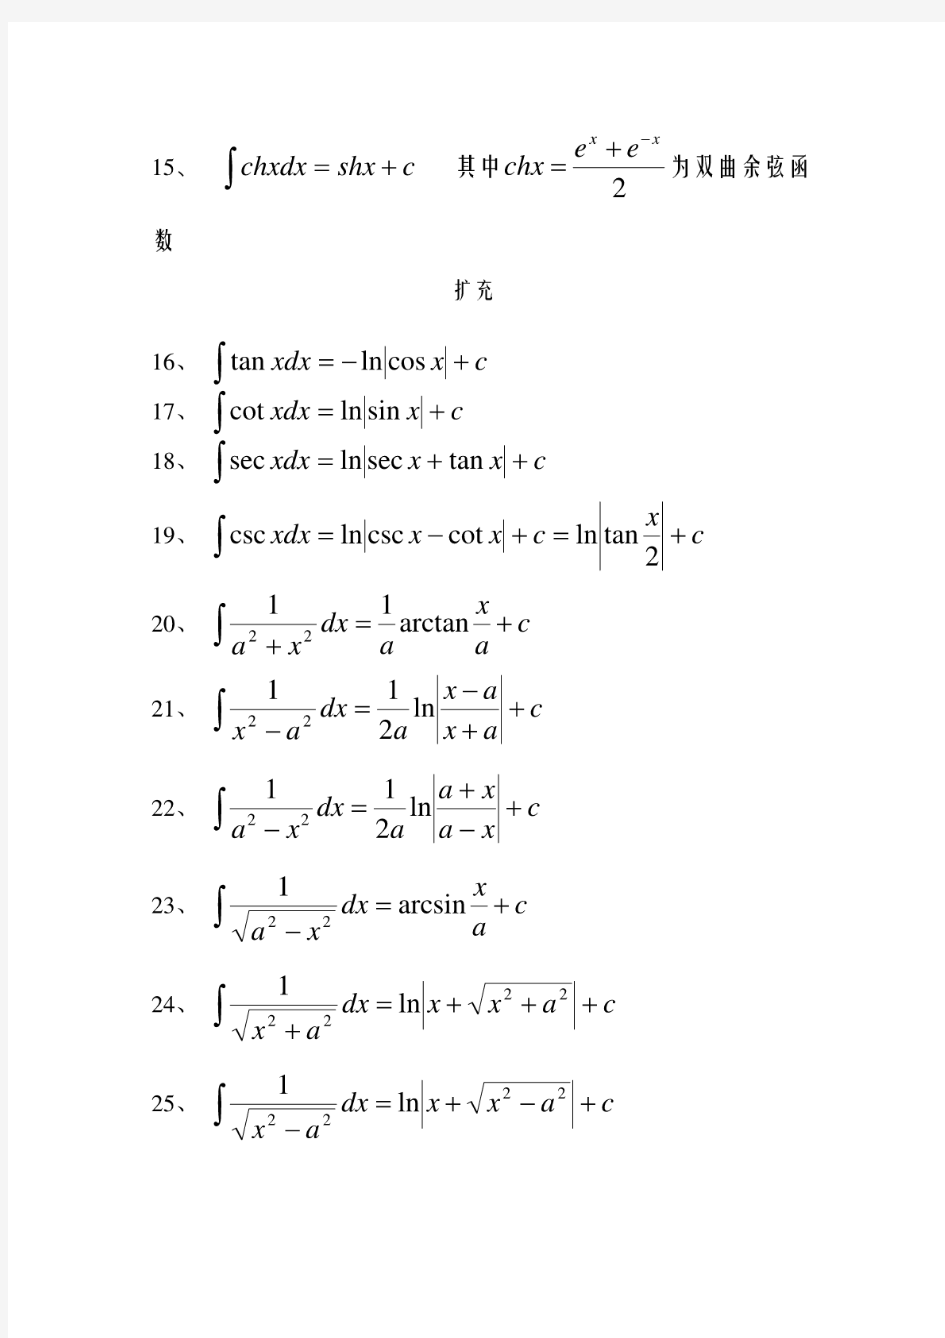 基本积分公式(24个)